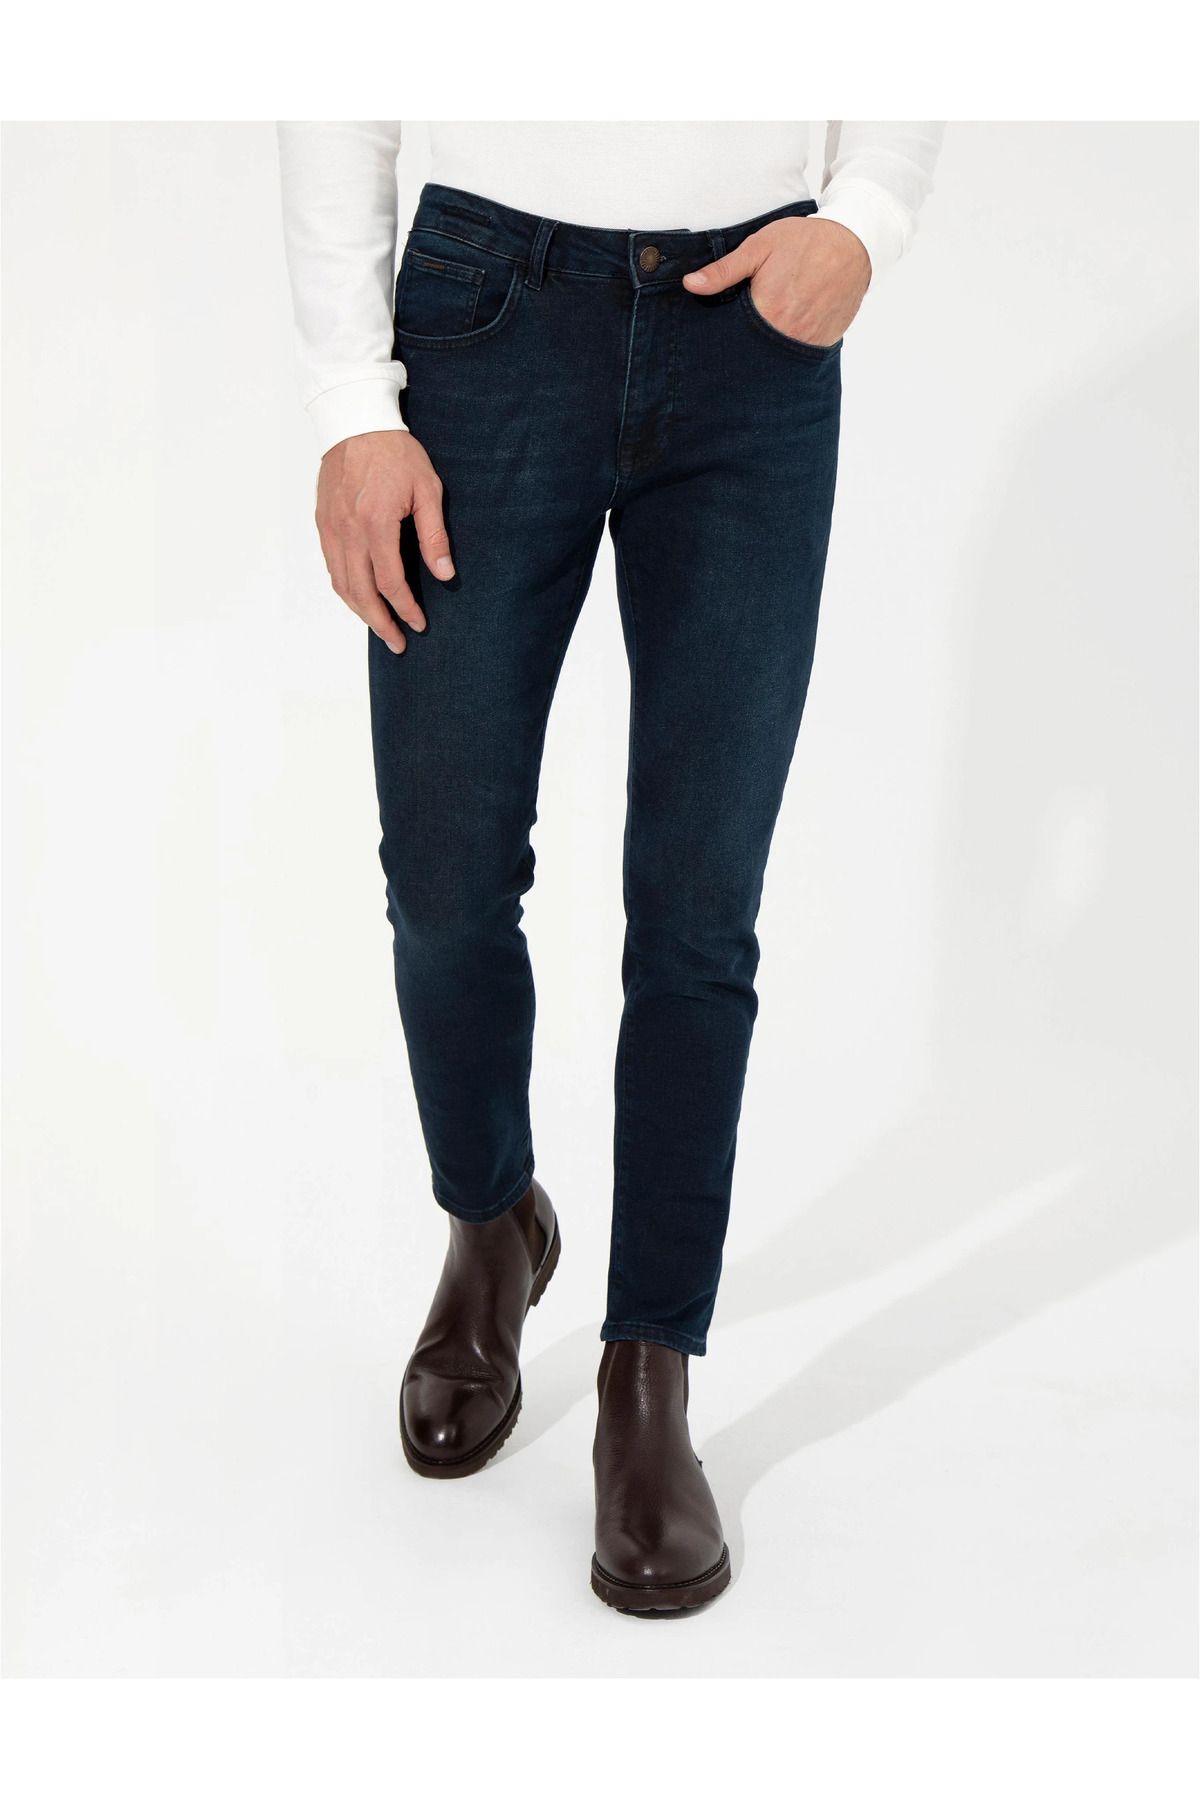 Pierre Cardin Erkek Jeans Lacivert 1481055